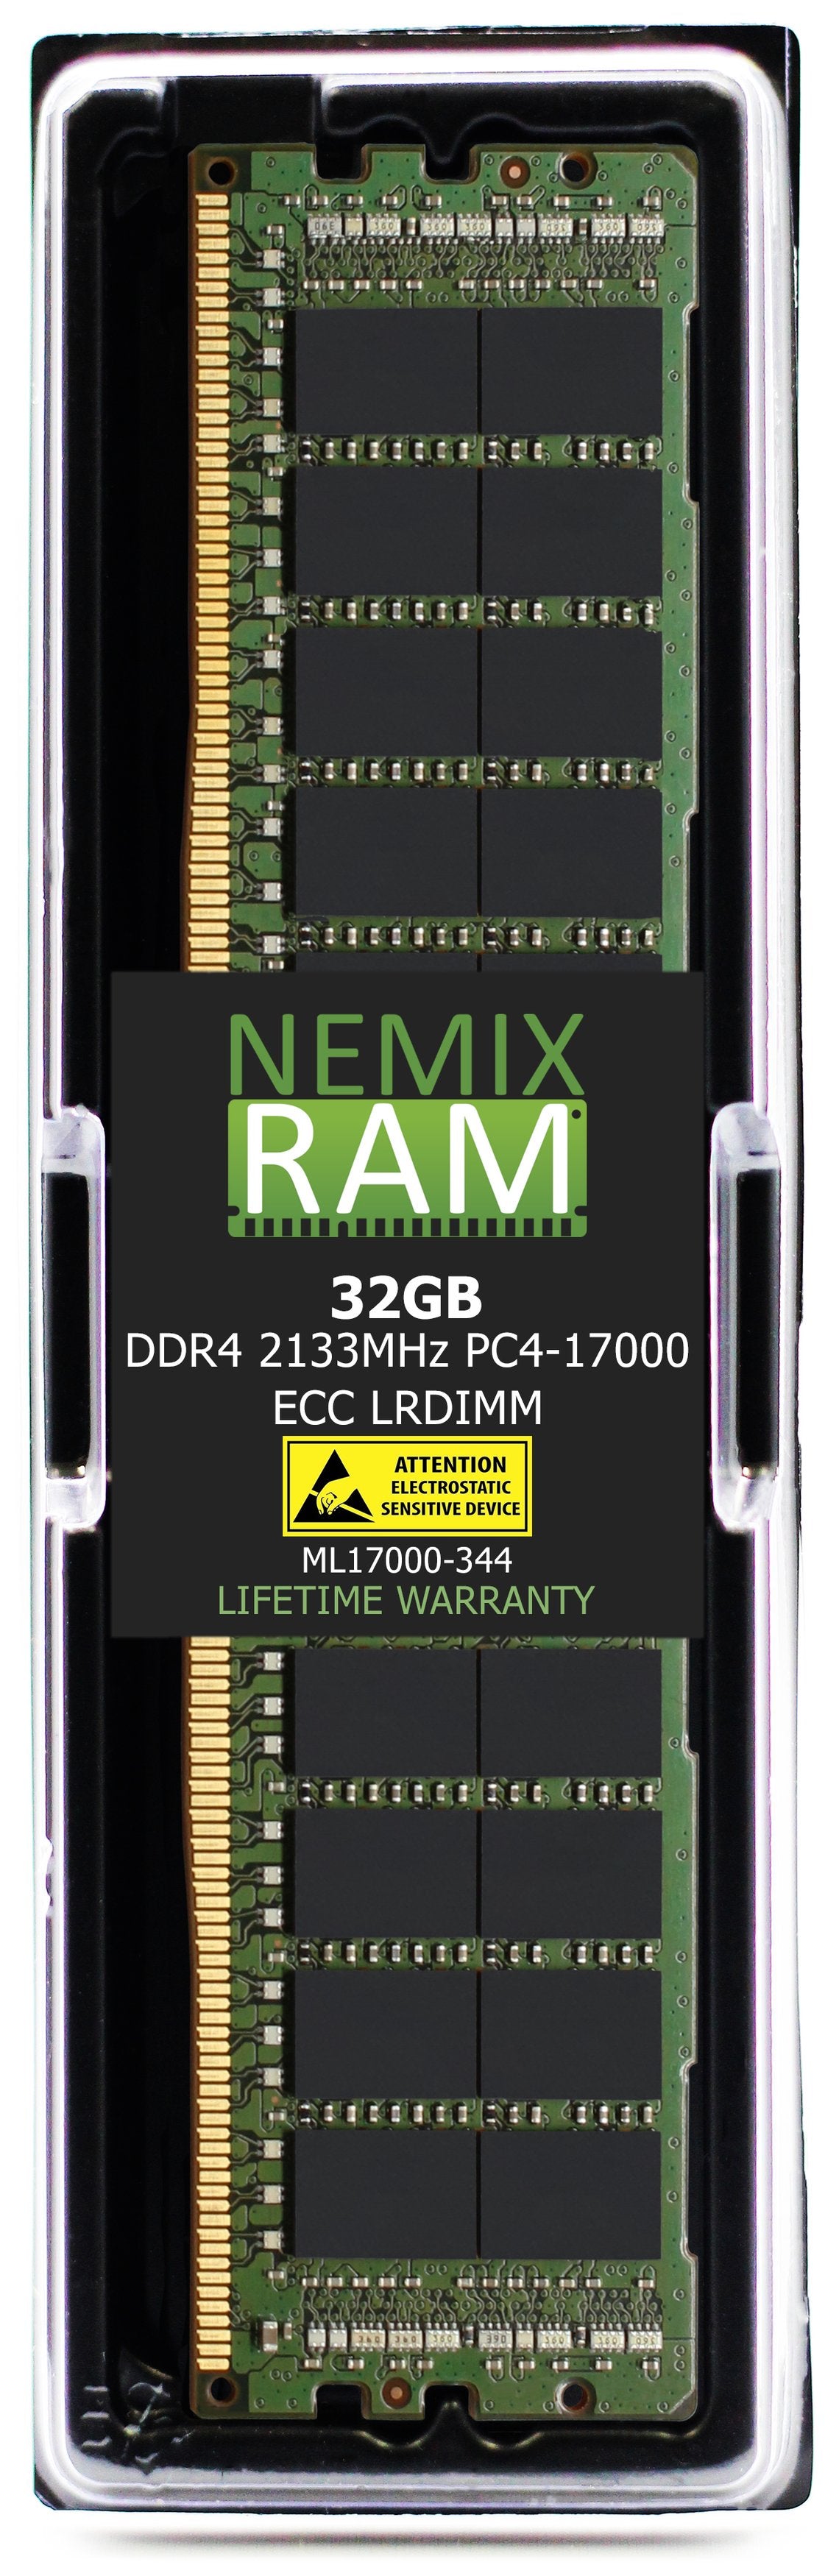 32GB DDR4 2133MHZ PC4-17000 LRDIMM Compatible with Supermicro MEM-DR432L-SL01-LR21